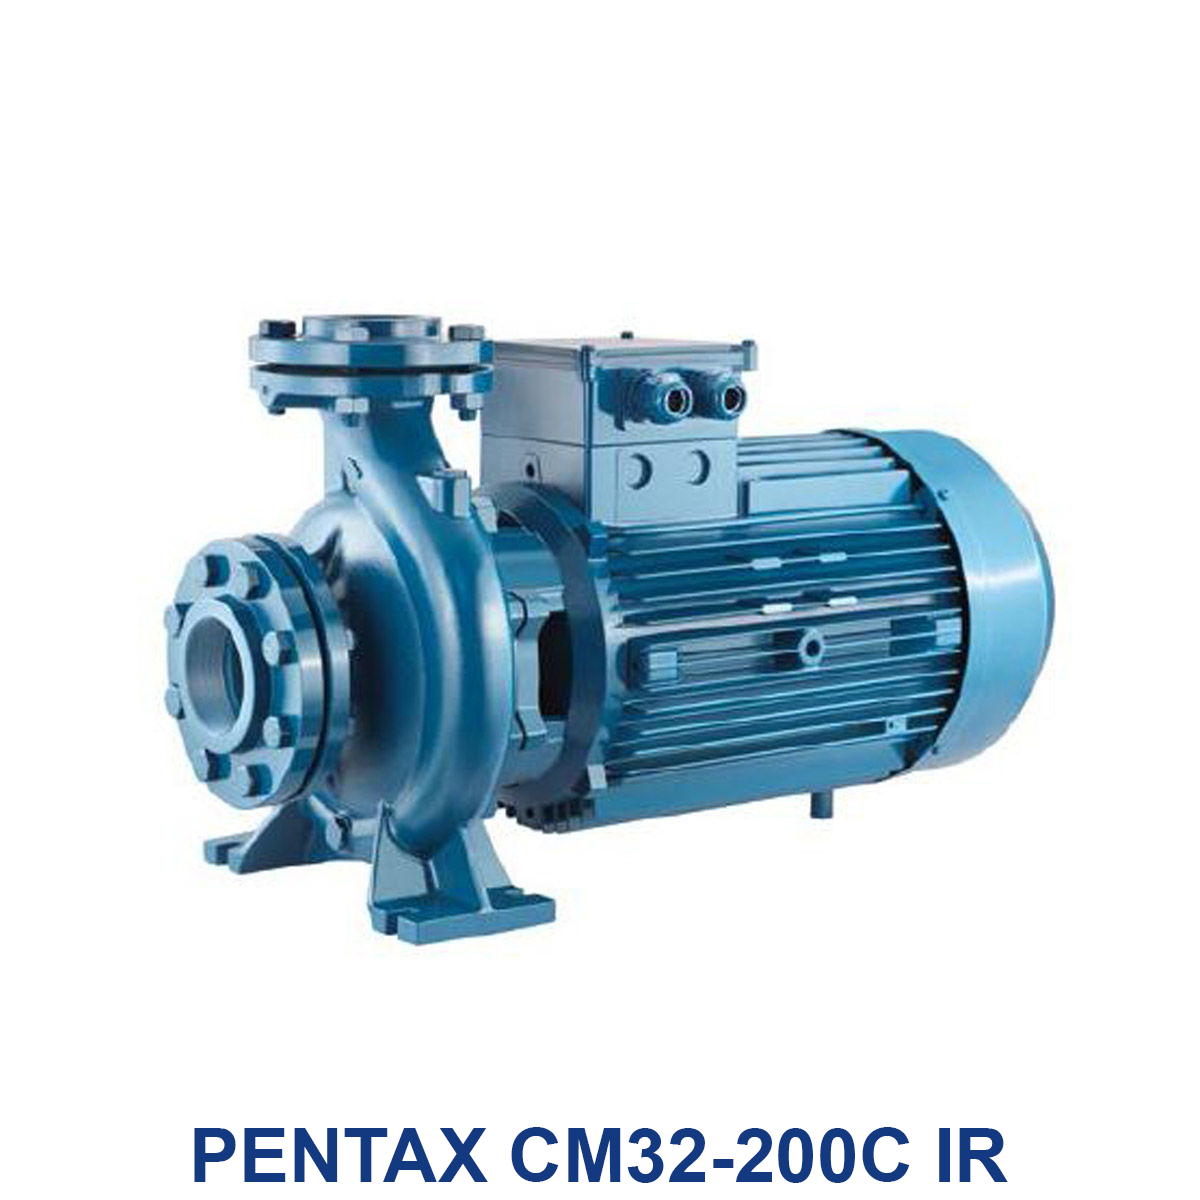 PENTAX-CM32-200C-IR